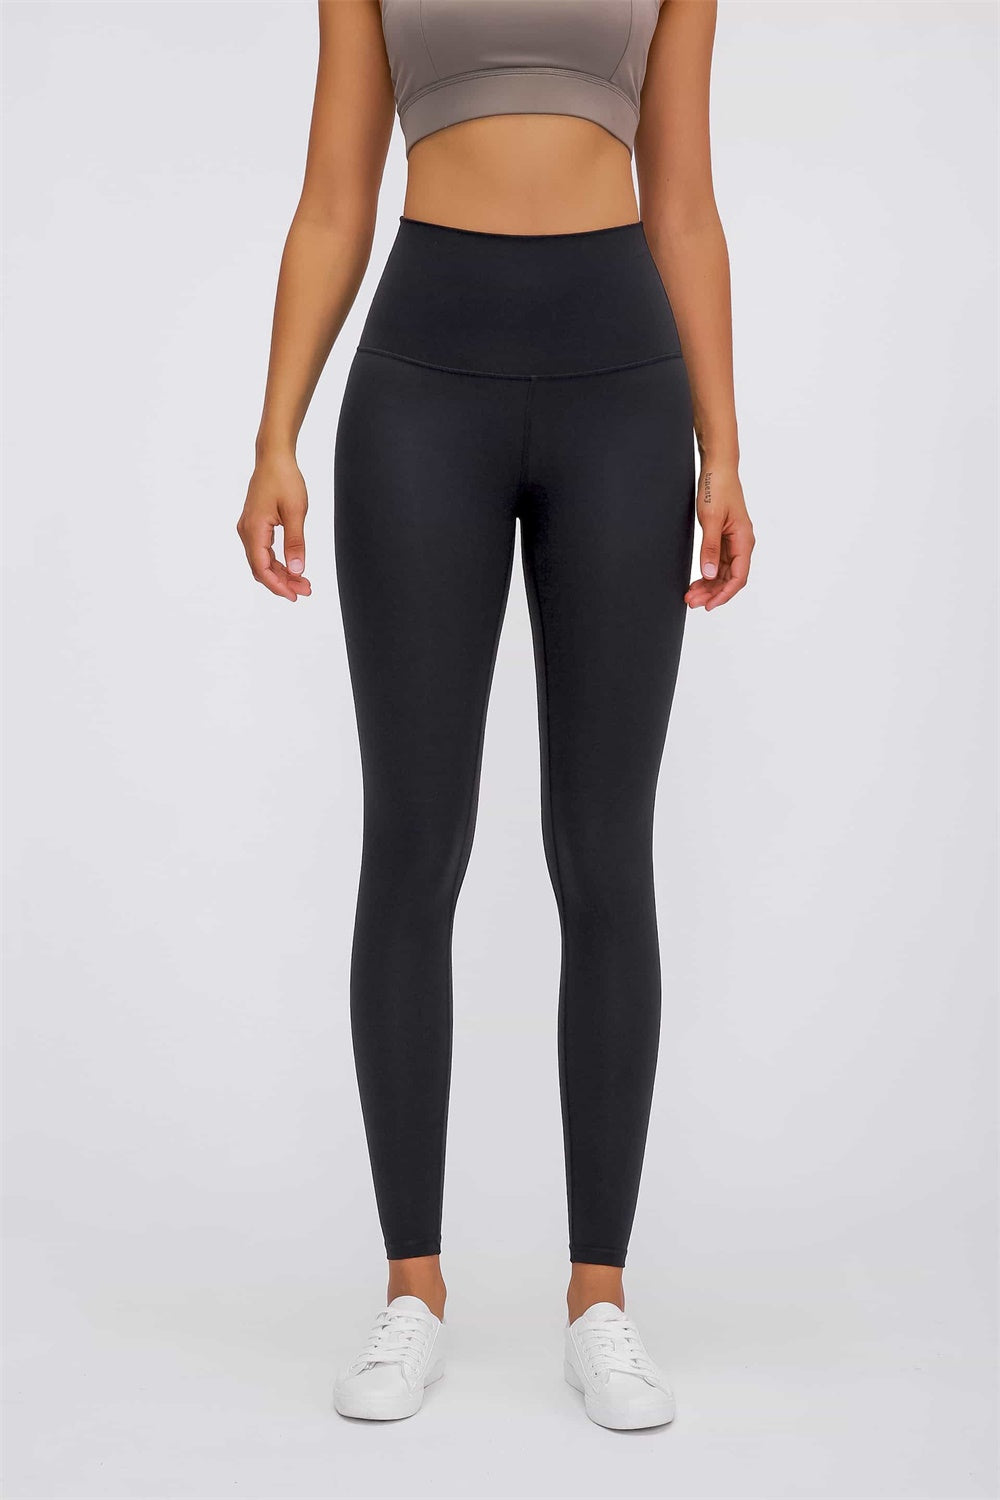 Feel Like Skin Elastic Waistband Yoga Leggings – Lauren's Chic Boutique